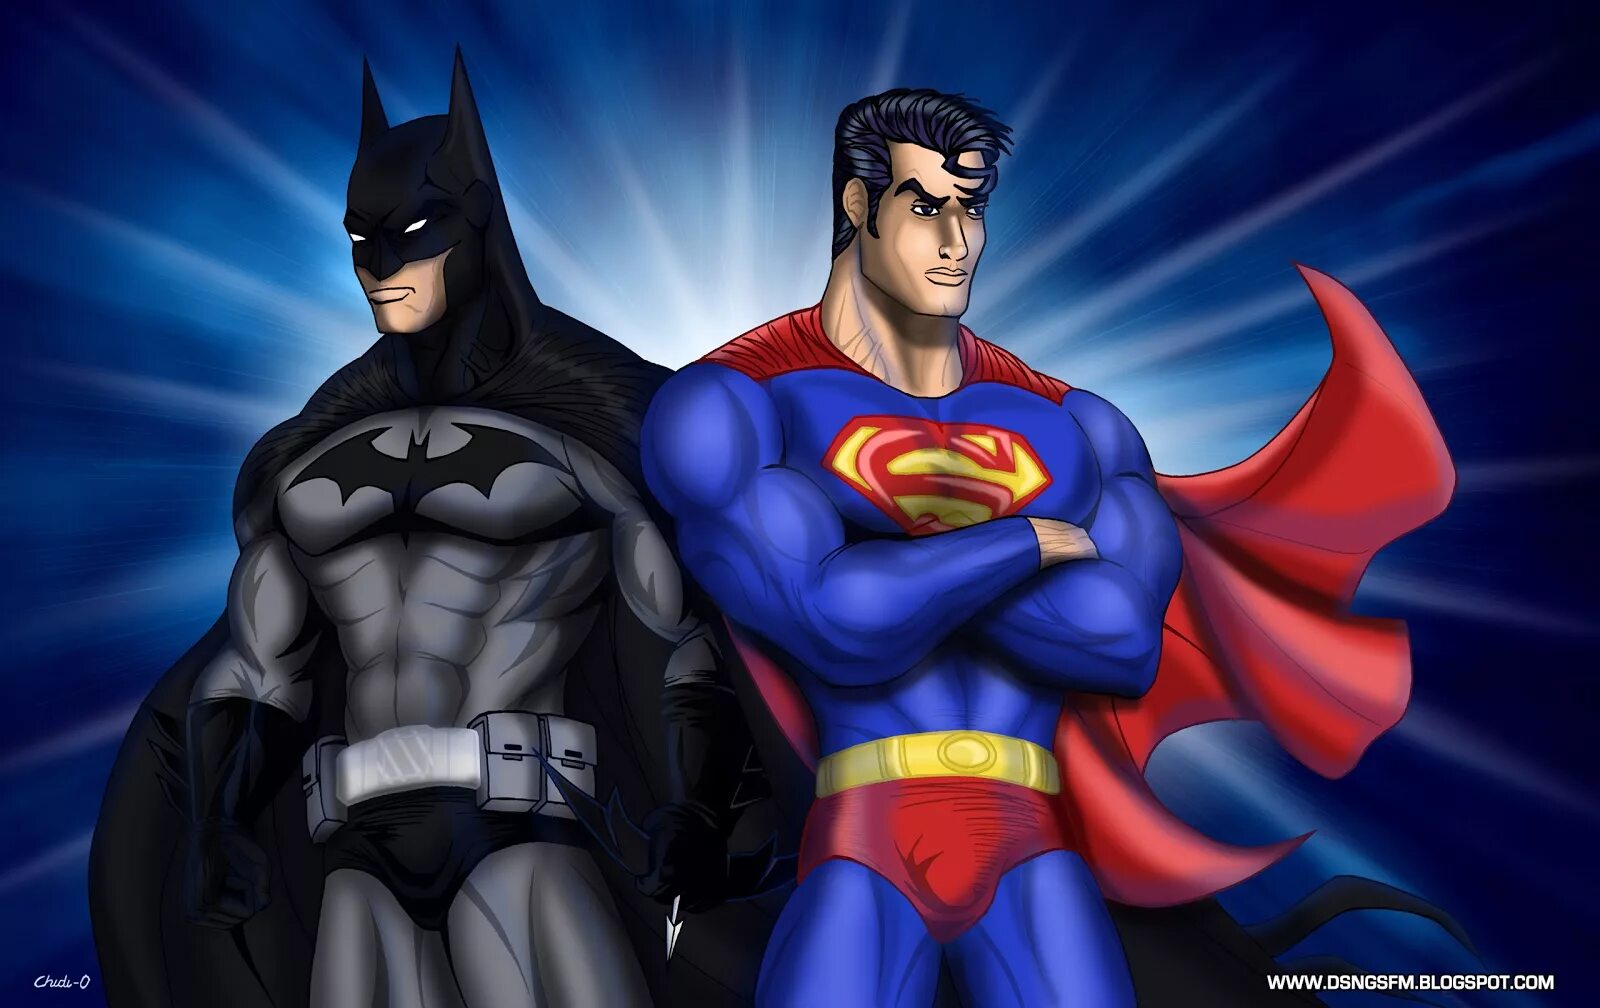 Бэтмен и Супермен. Супермен Бэтмен Спайдермен. Бэтмен человек паук Супермен. Бэтмен Бэтмен Бэтмен Супермен человек паук.